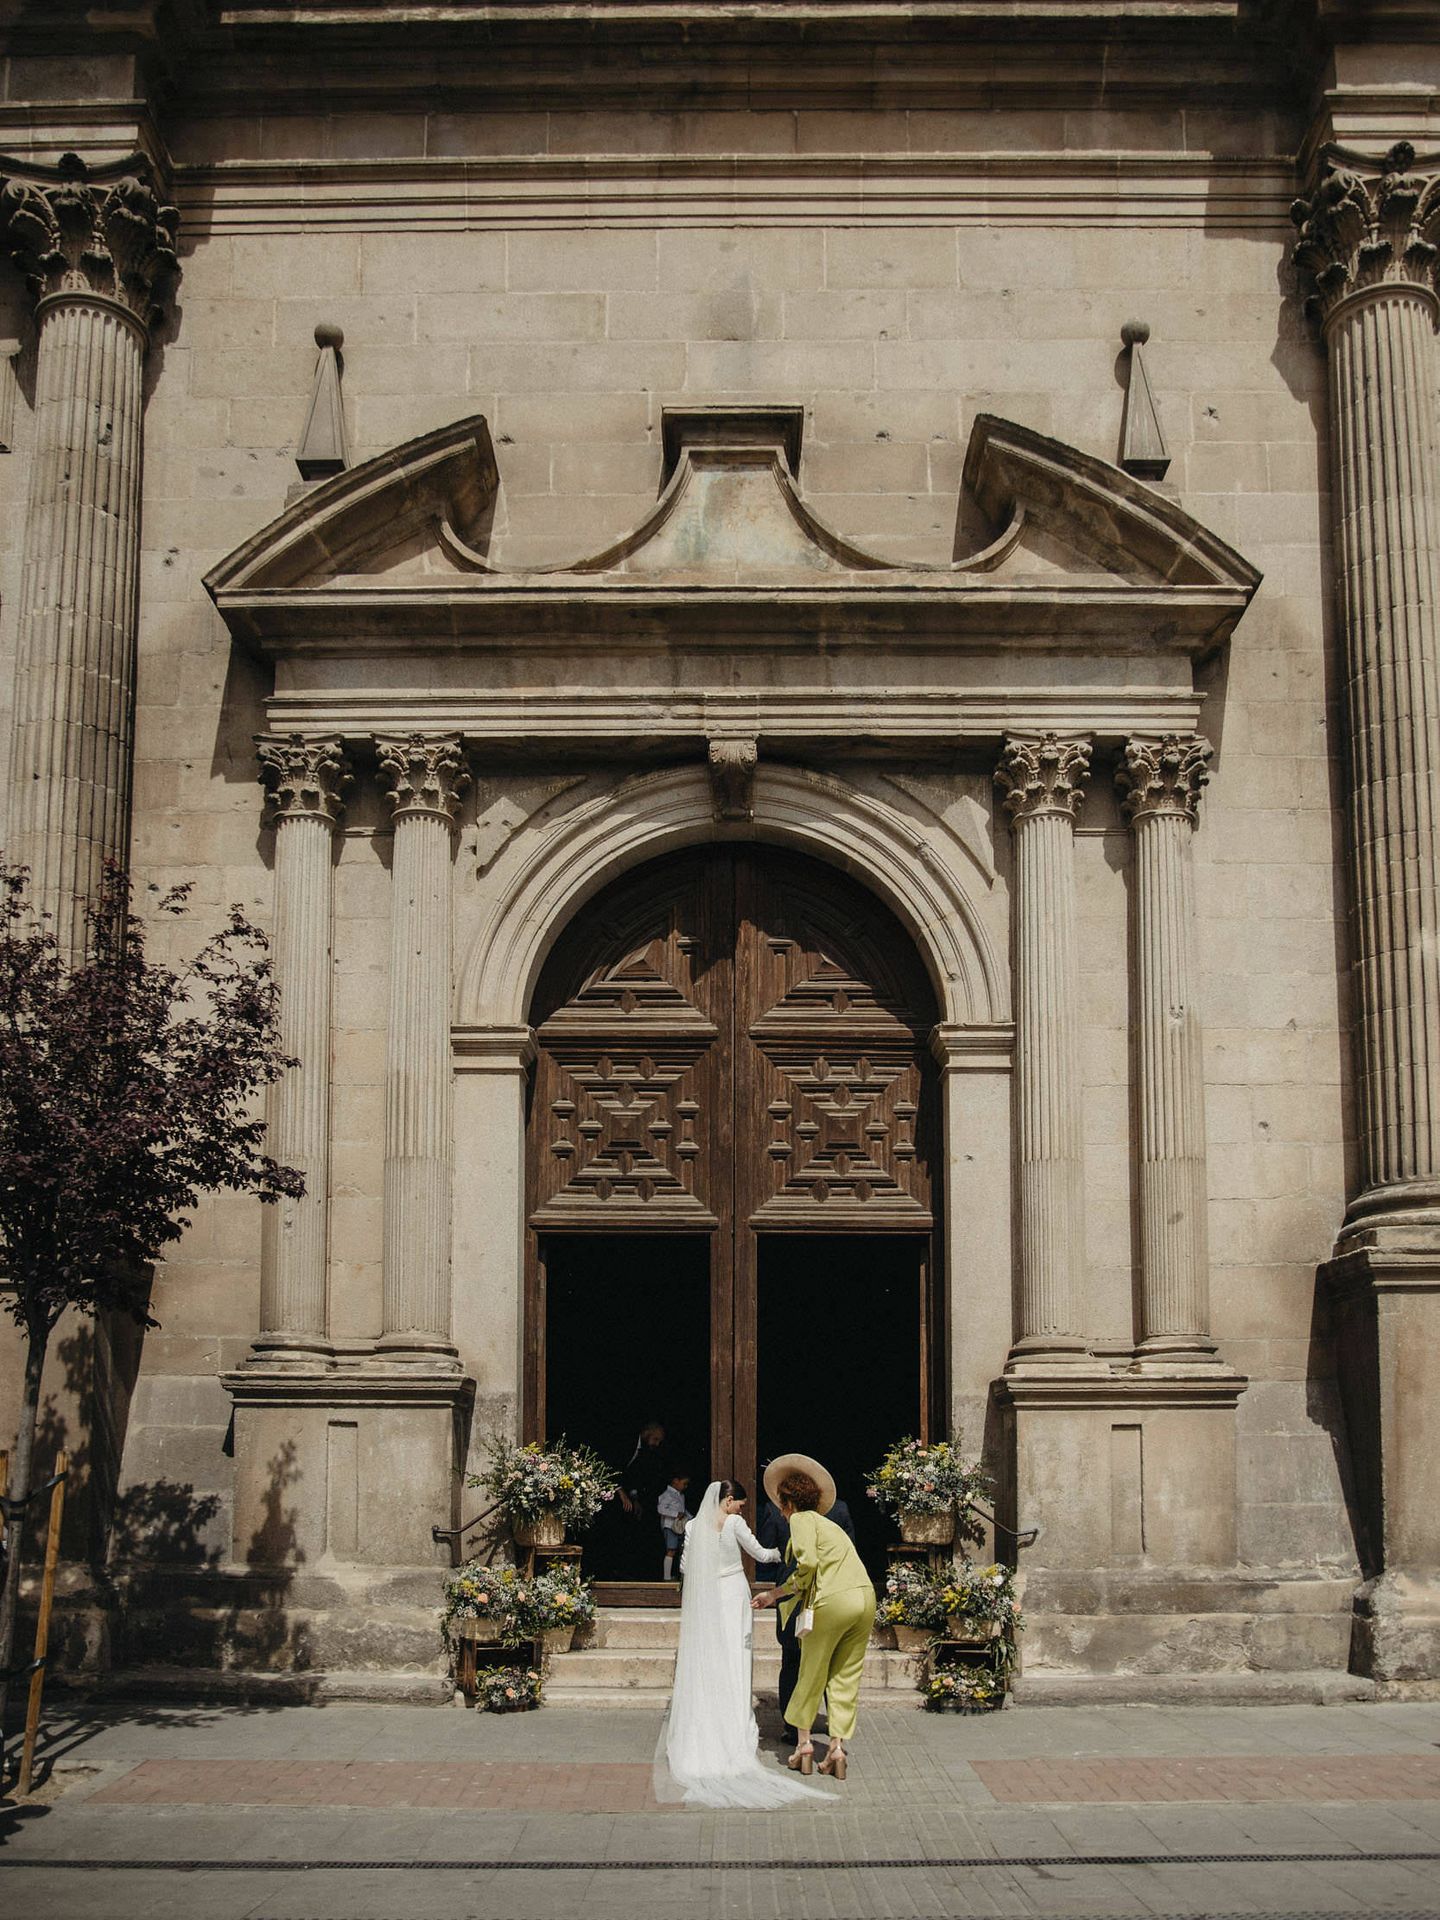 La boda de Alicia y Gabriel. (Caleidoscopia Foto) 